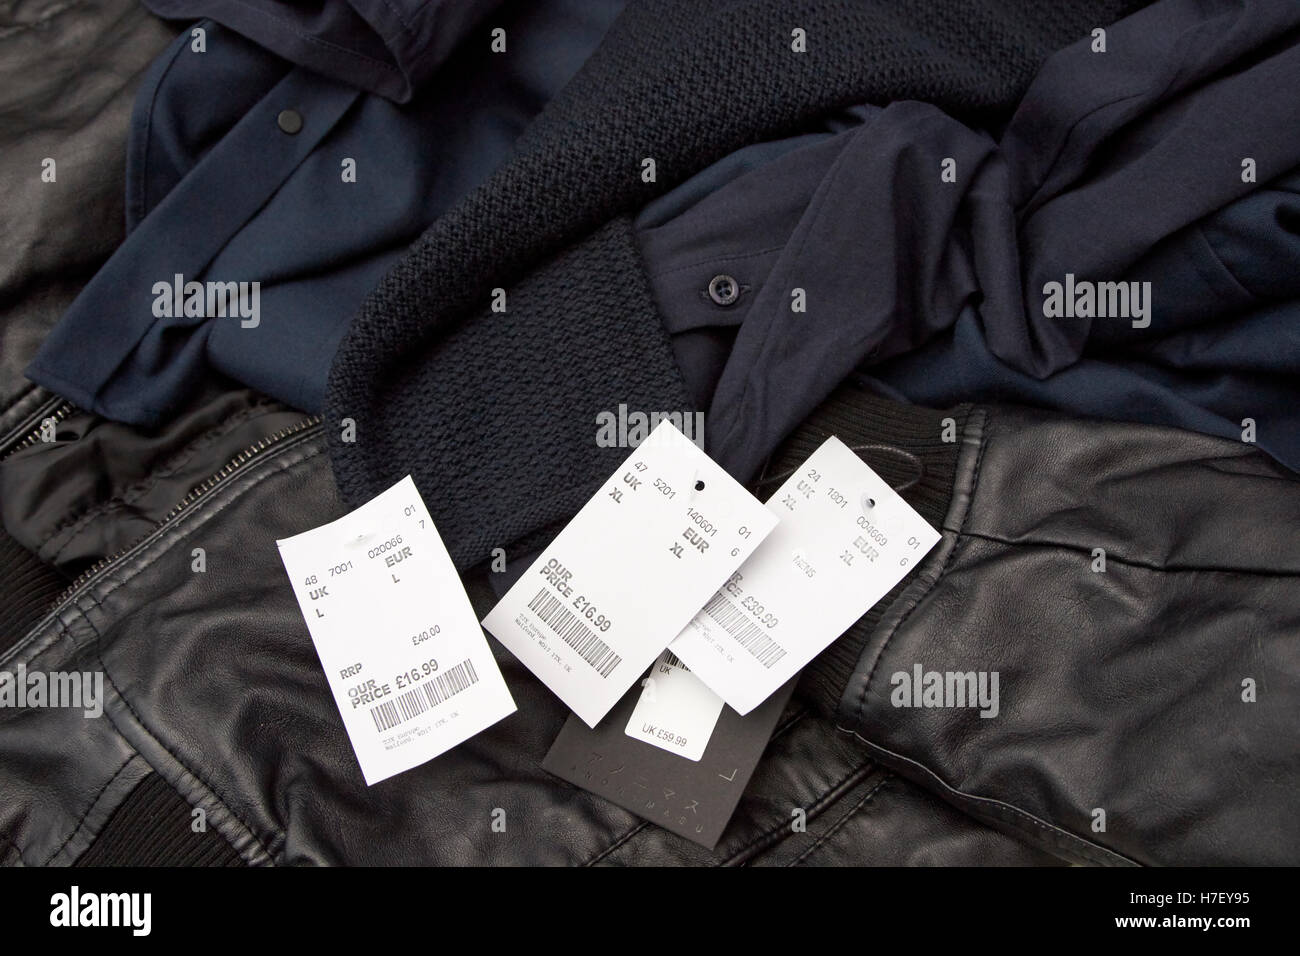 Tkmax prezzo ridotto di tag per abbigliamento Foto Stock